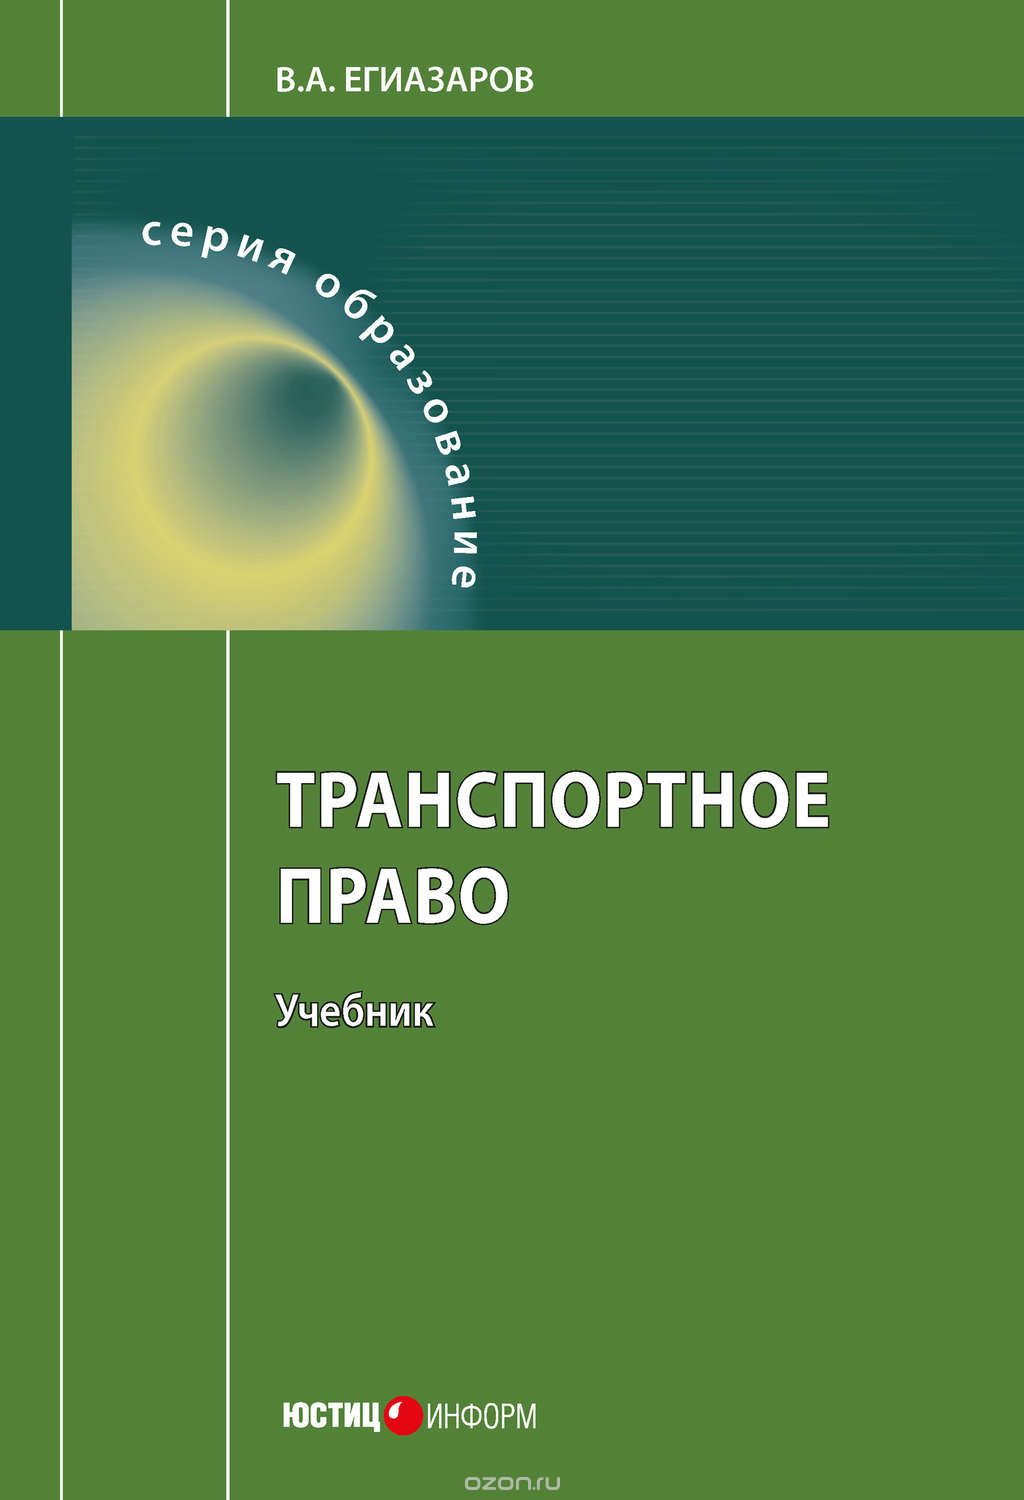 Транспортное право, Егиазаров Владимир Абрамович